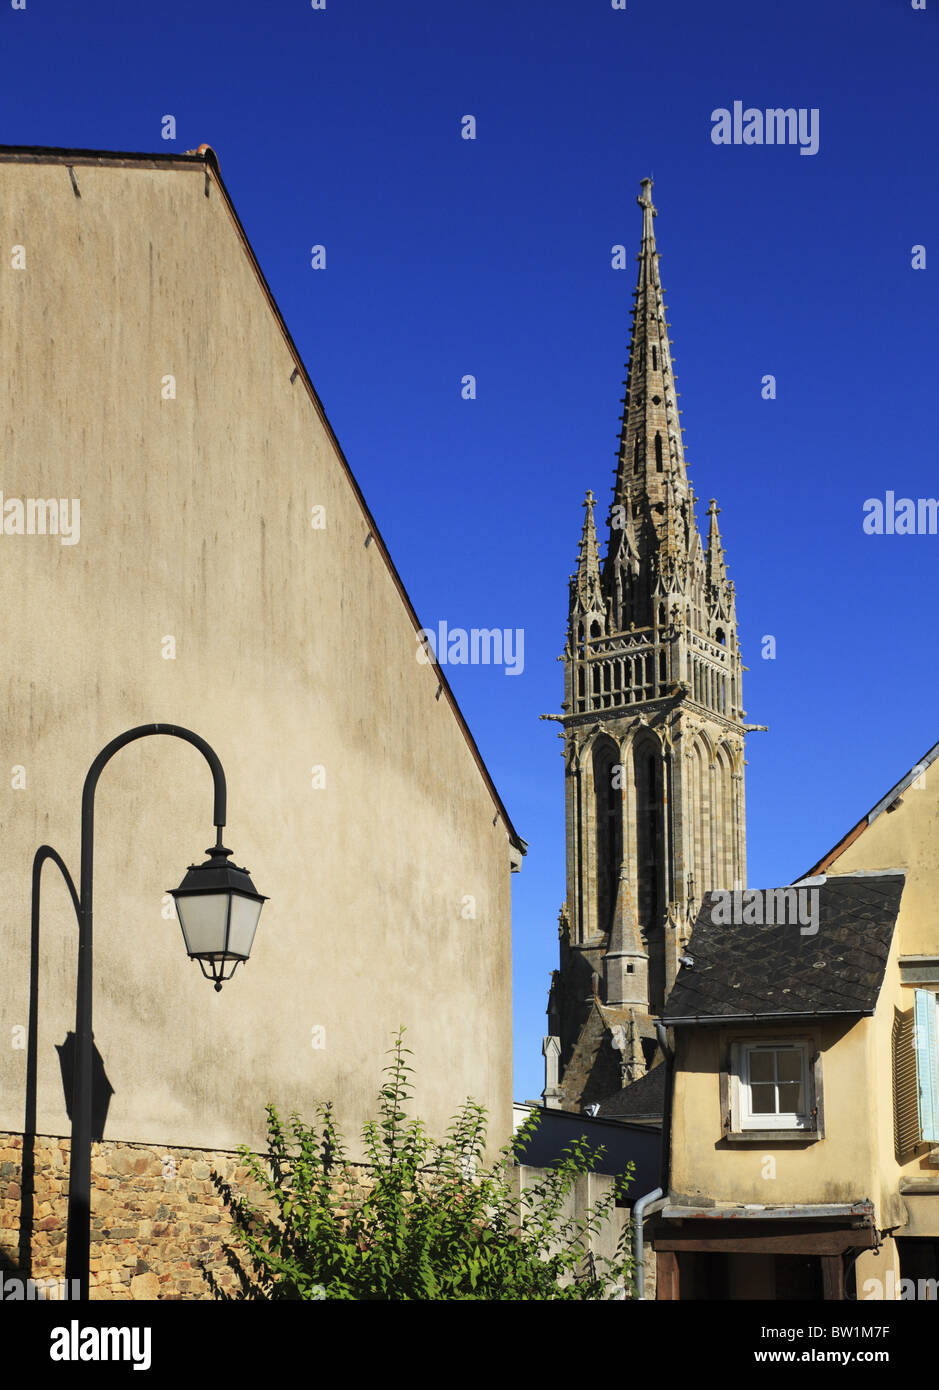 The Church of Notre-Dame in the small market town of La Guerche-de-Bretagne, France. Stock Photo